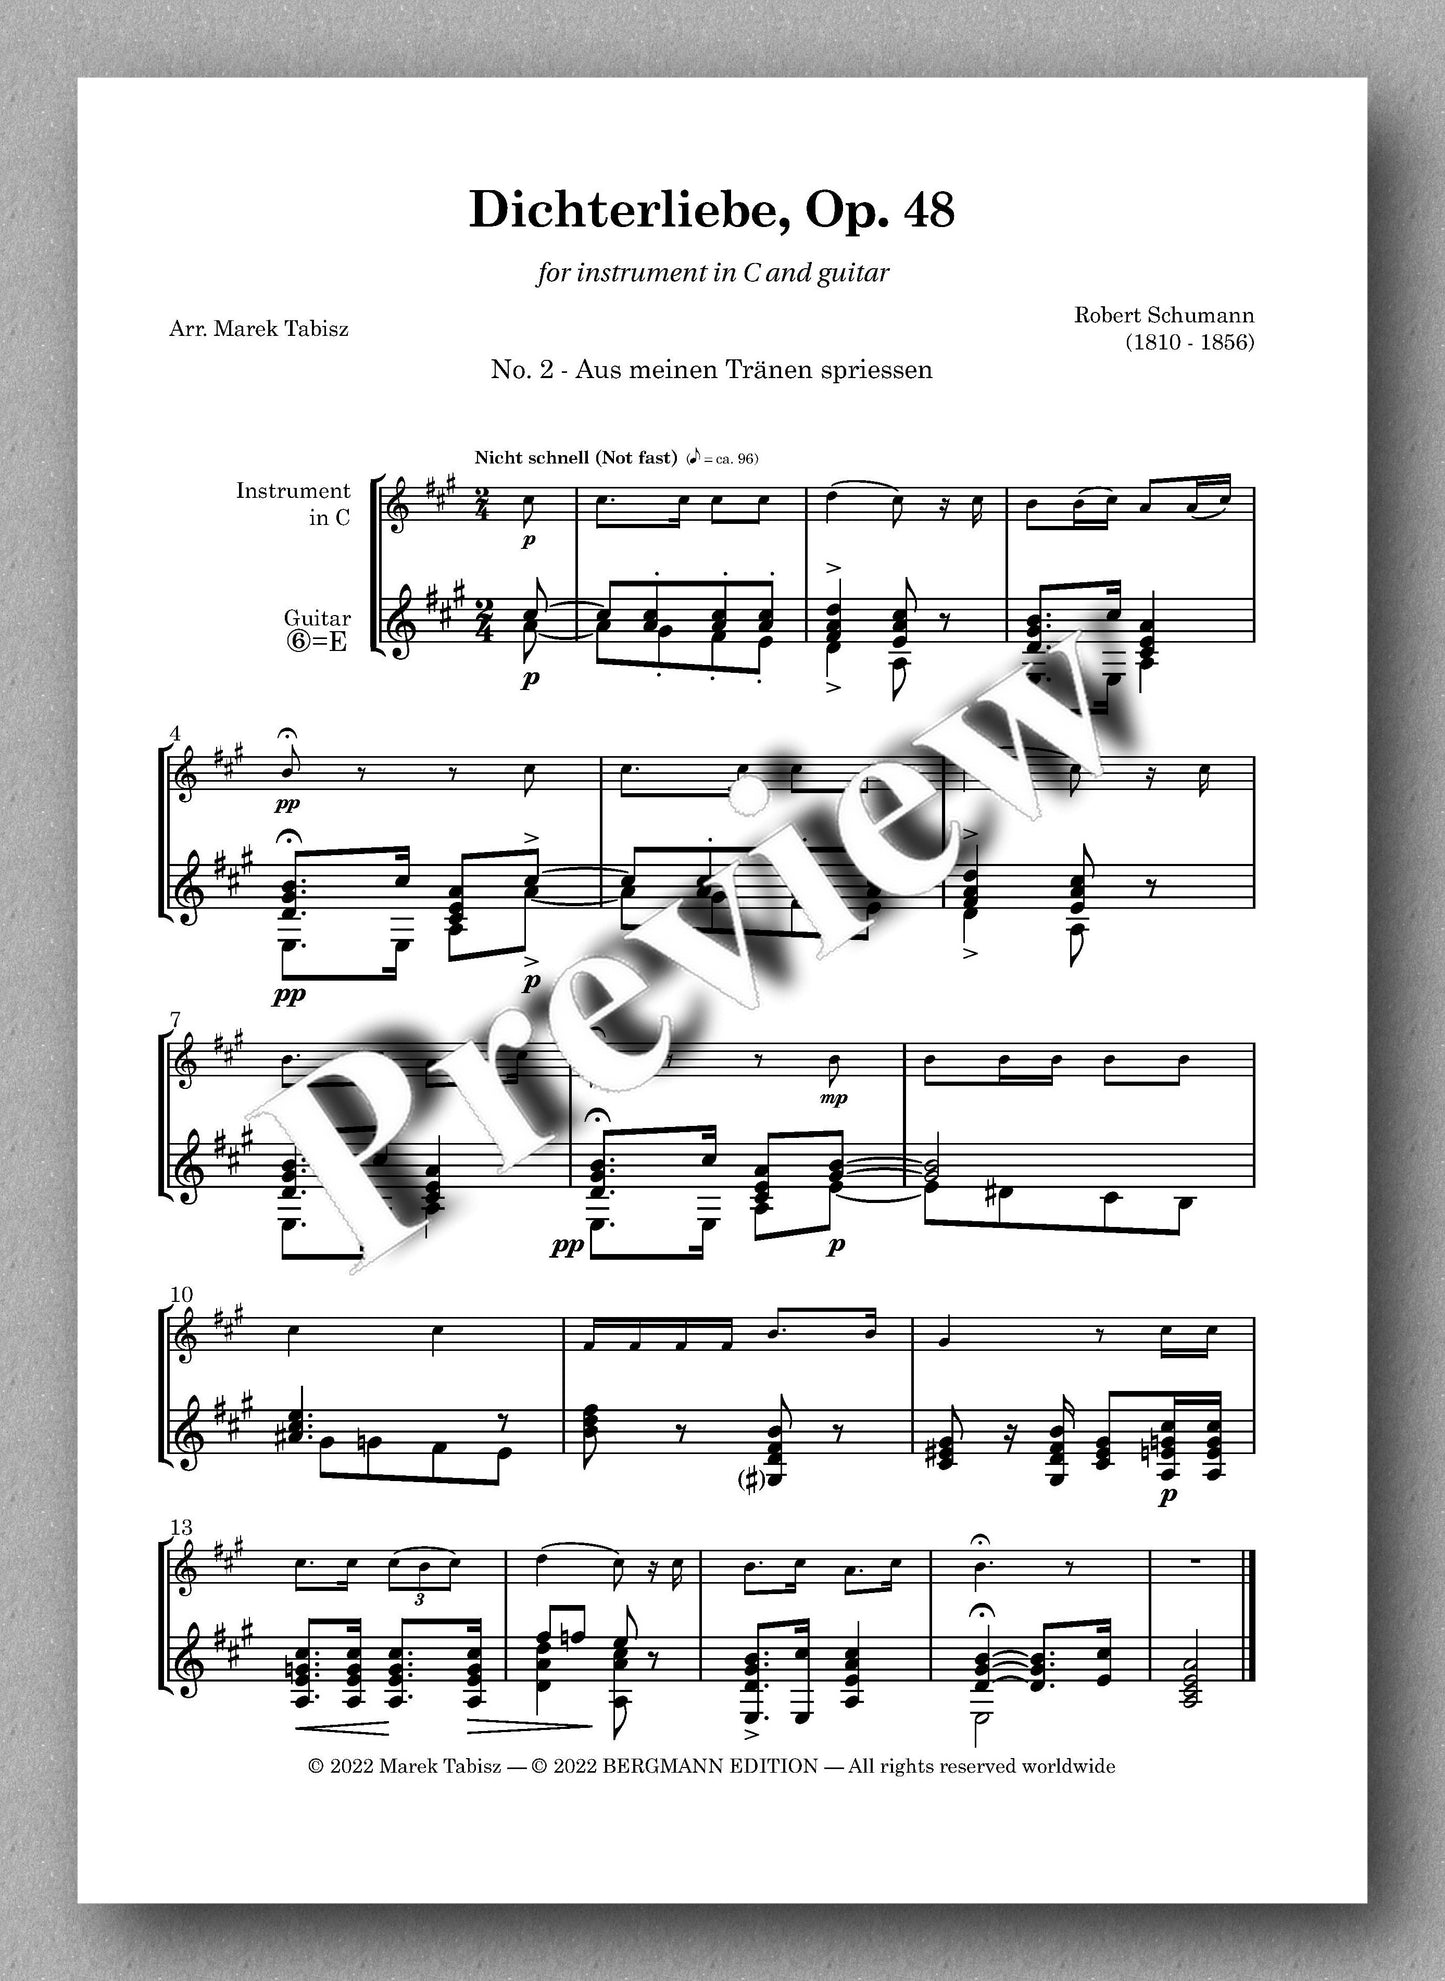 Robert Schumann, Dichterliebe Op. 48 - preview of No. 2 - Aus meinen Tränen spriessen